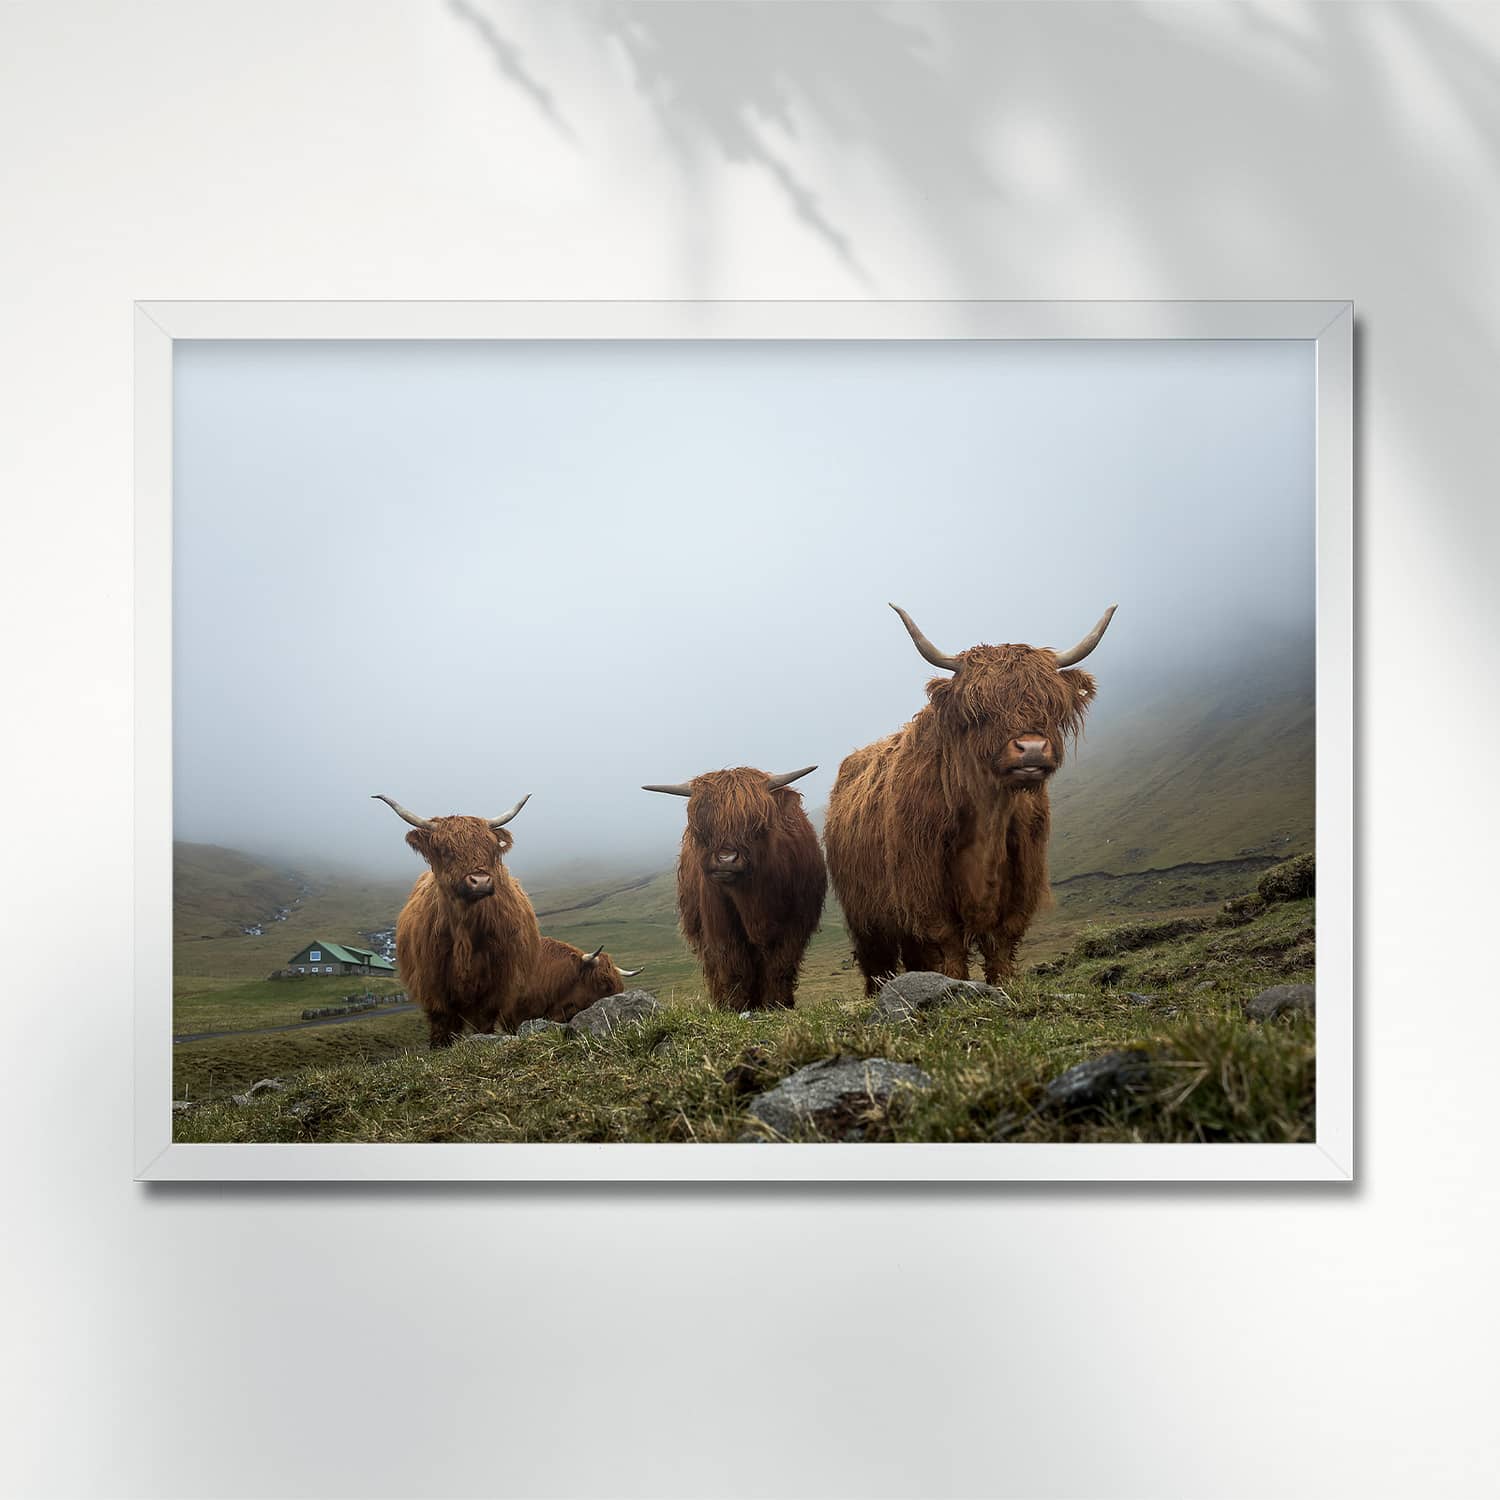 HIGHLANDER COWS ON A FOGGY DAY, FAROE ISLANDS - POSTER highlander cows foggy valley faroe islands 0025